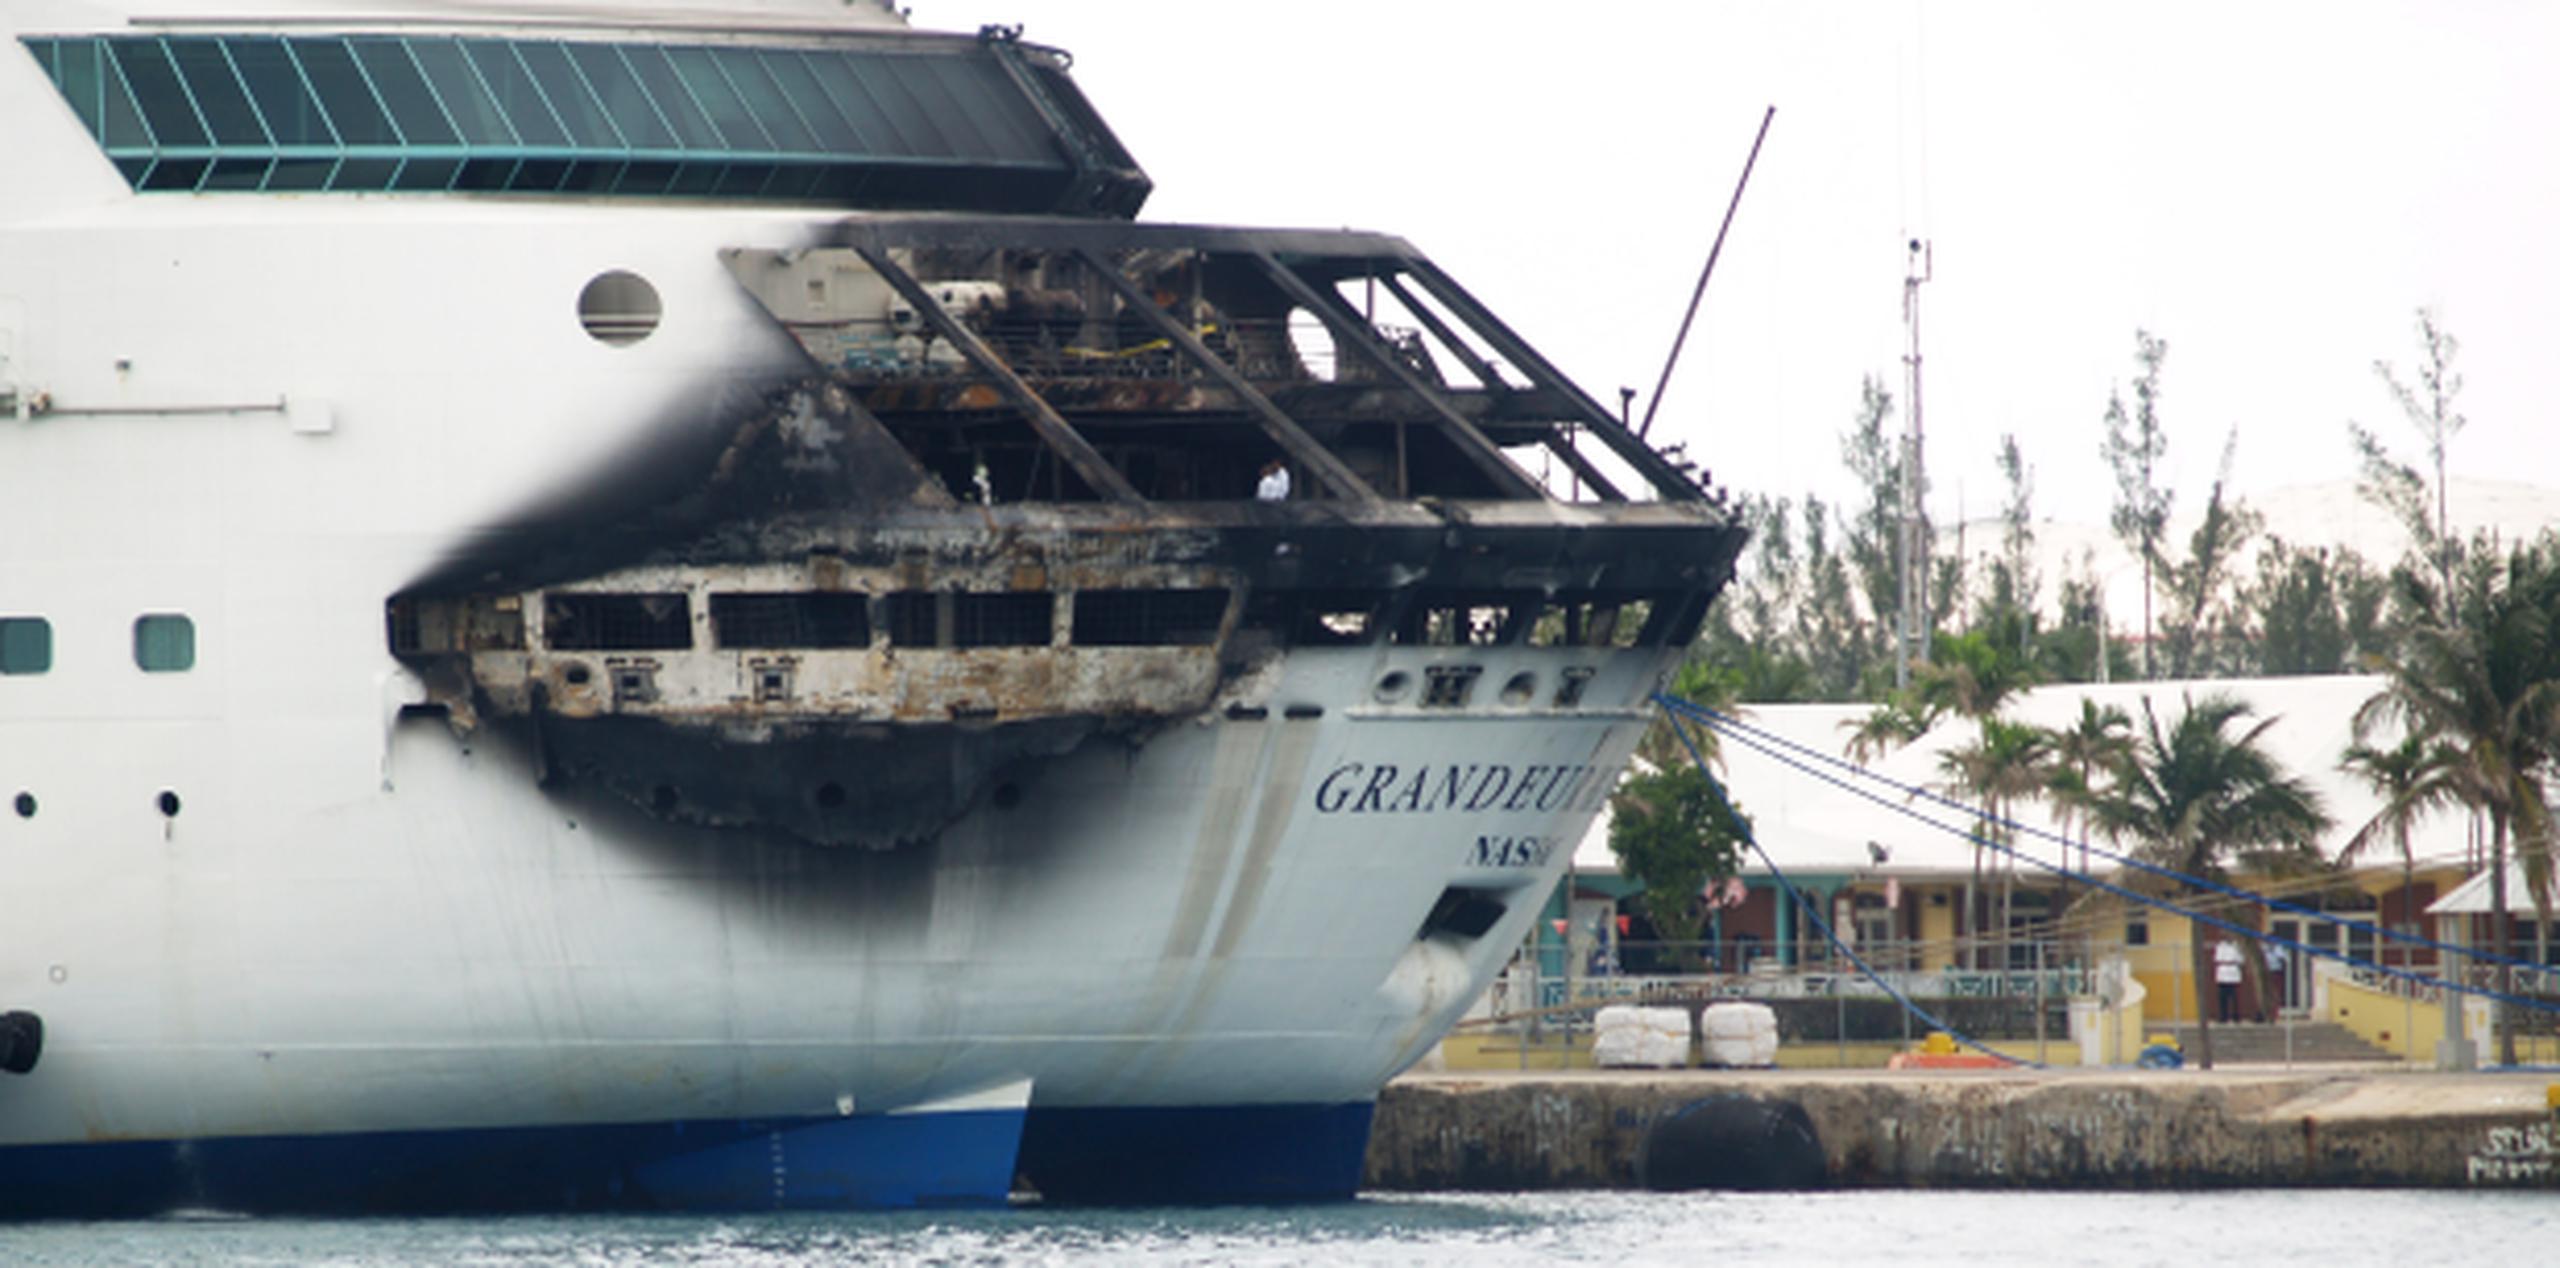 Royal Caribbean informó que el incendio ocurrió en la zona de atraque del tercer puente a primeras horas de lunes y que fue rápidamente extinguido. Royal Caribbean dijo que los 2.224 pasajeros y 796 tripulantes estaban sanos y salvos. (AP)